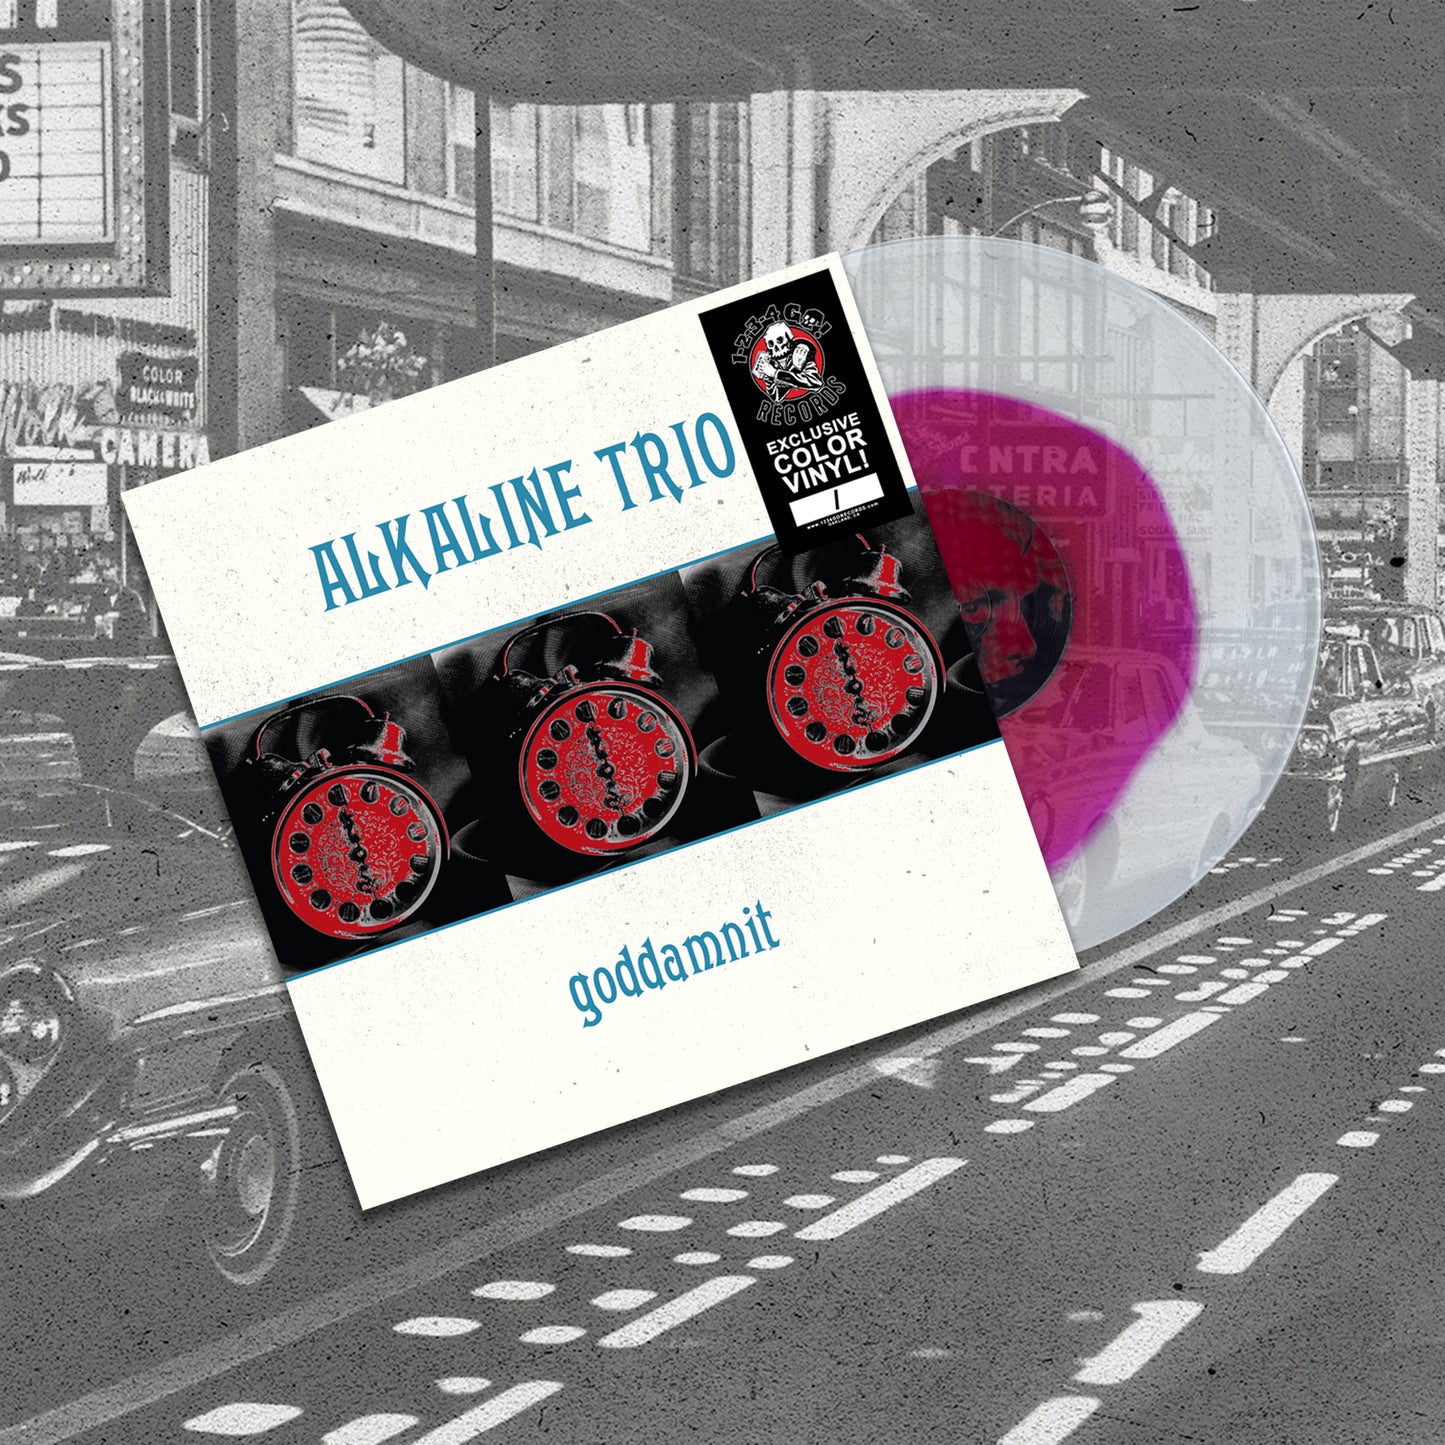 Alkaline Trio "Goddamnit" LP (1-2-3-4 Go! Records Exclusive Color!)